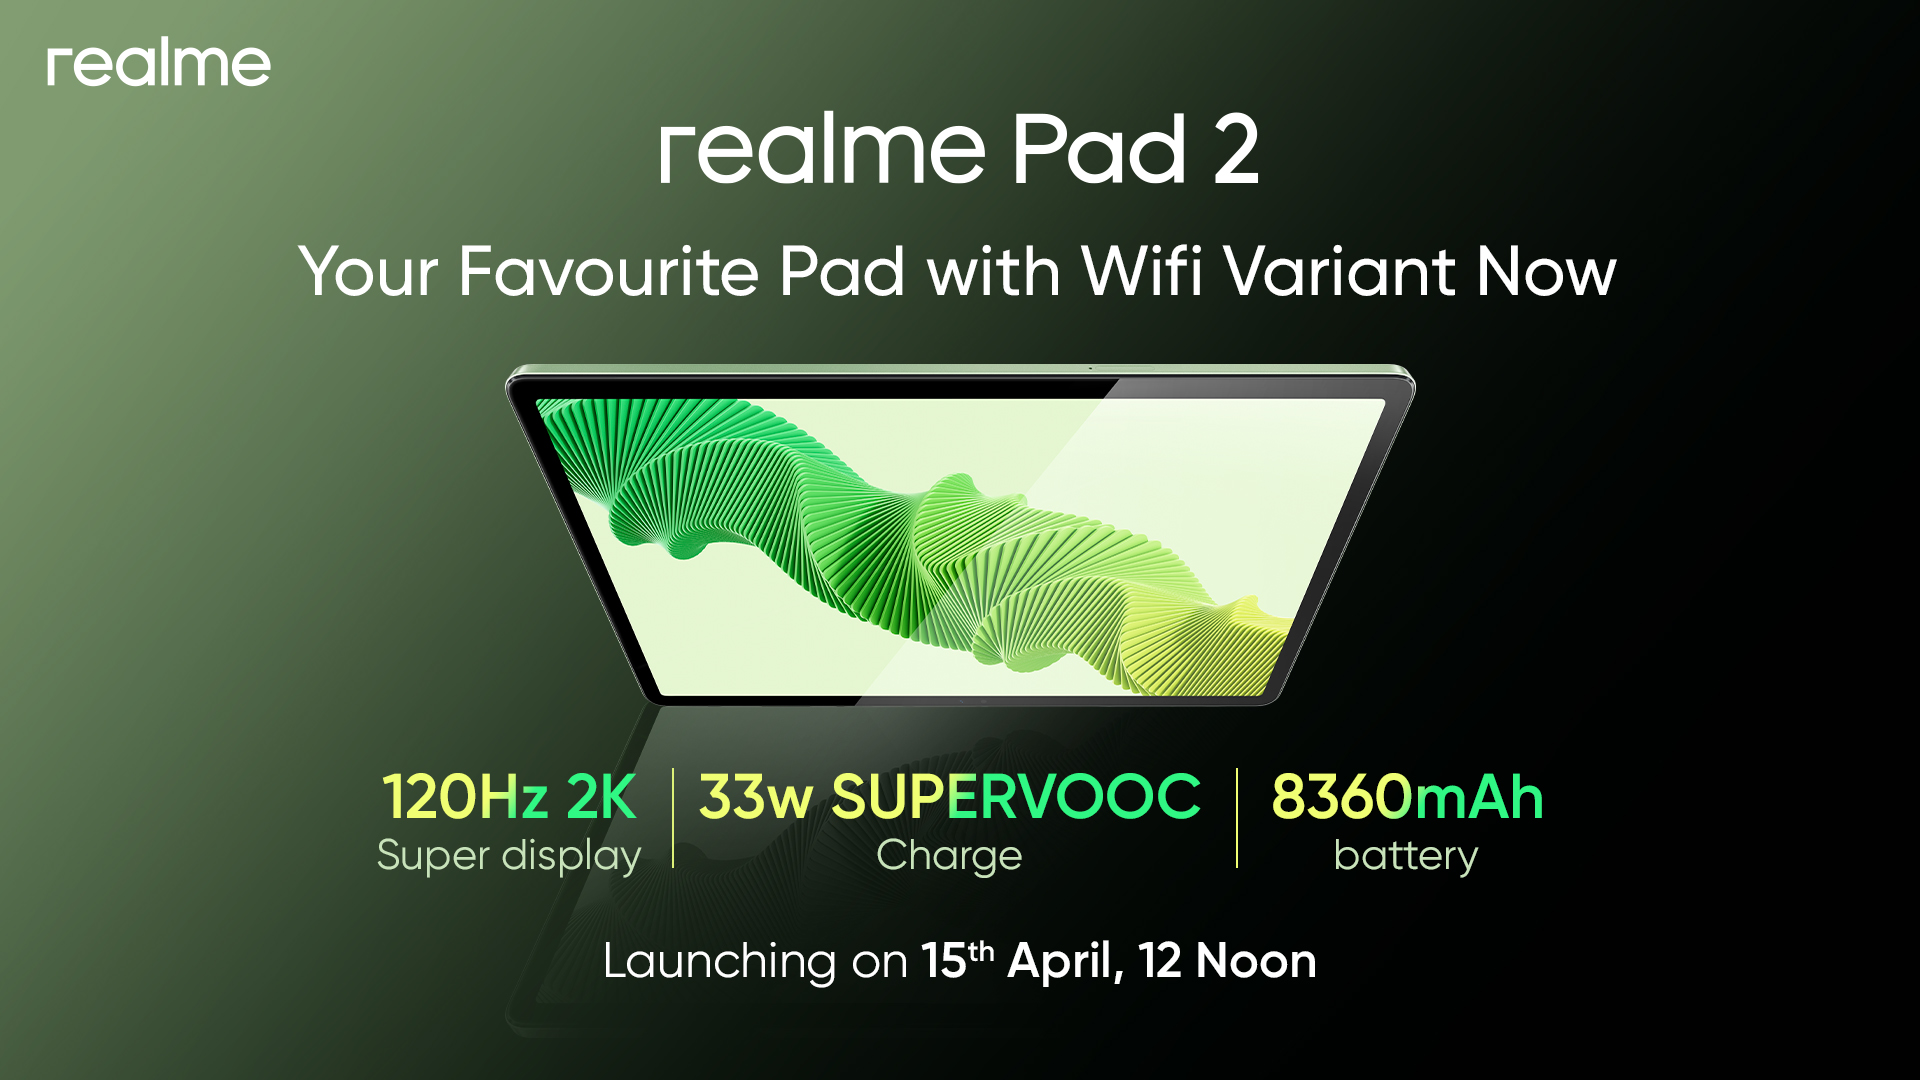 È ufficiale: il Realme Pad 2 con Wi-Fi debutterà il 15 aprile.